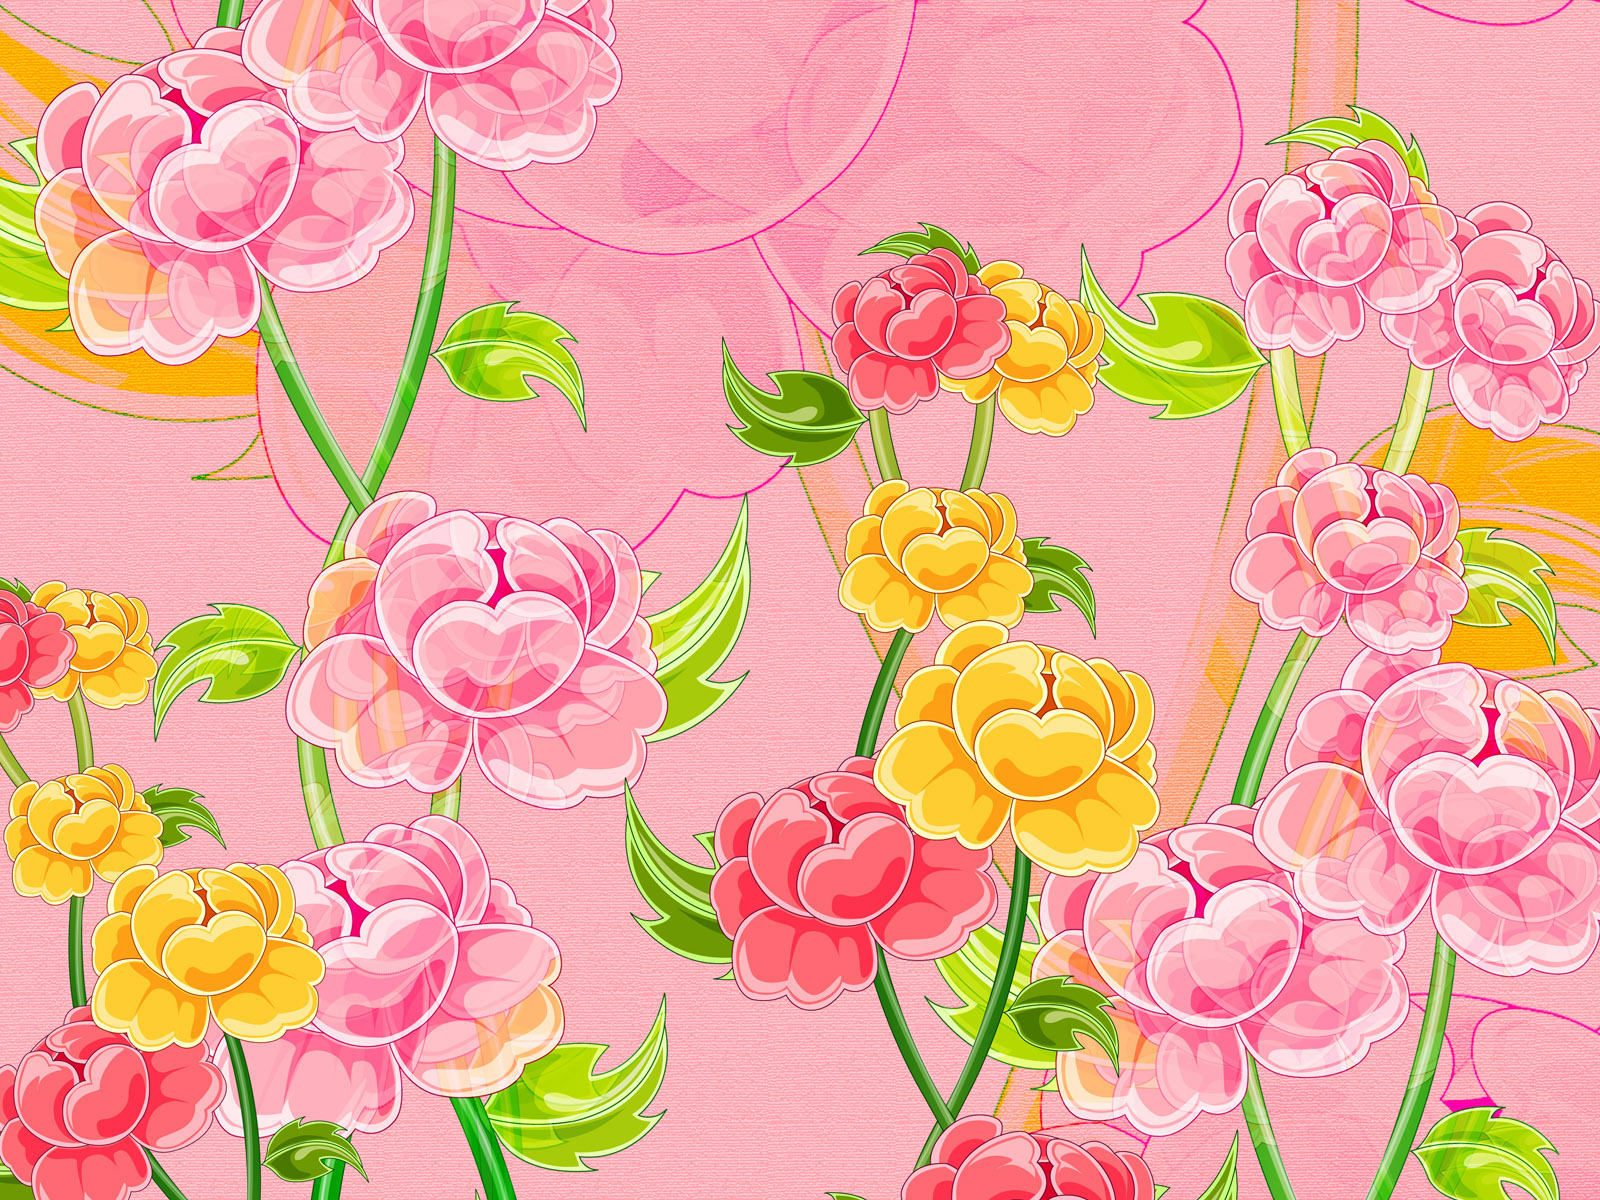 壁纸1600x1200合成花卉 4 16壁纸 合成花卉壁纸 合成花卉图片 合成花卉素材 花卉壁纸 花卉图库 花卉图片素材桌面壁纸